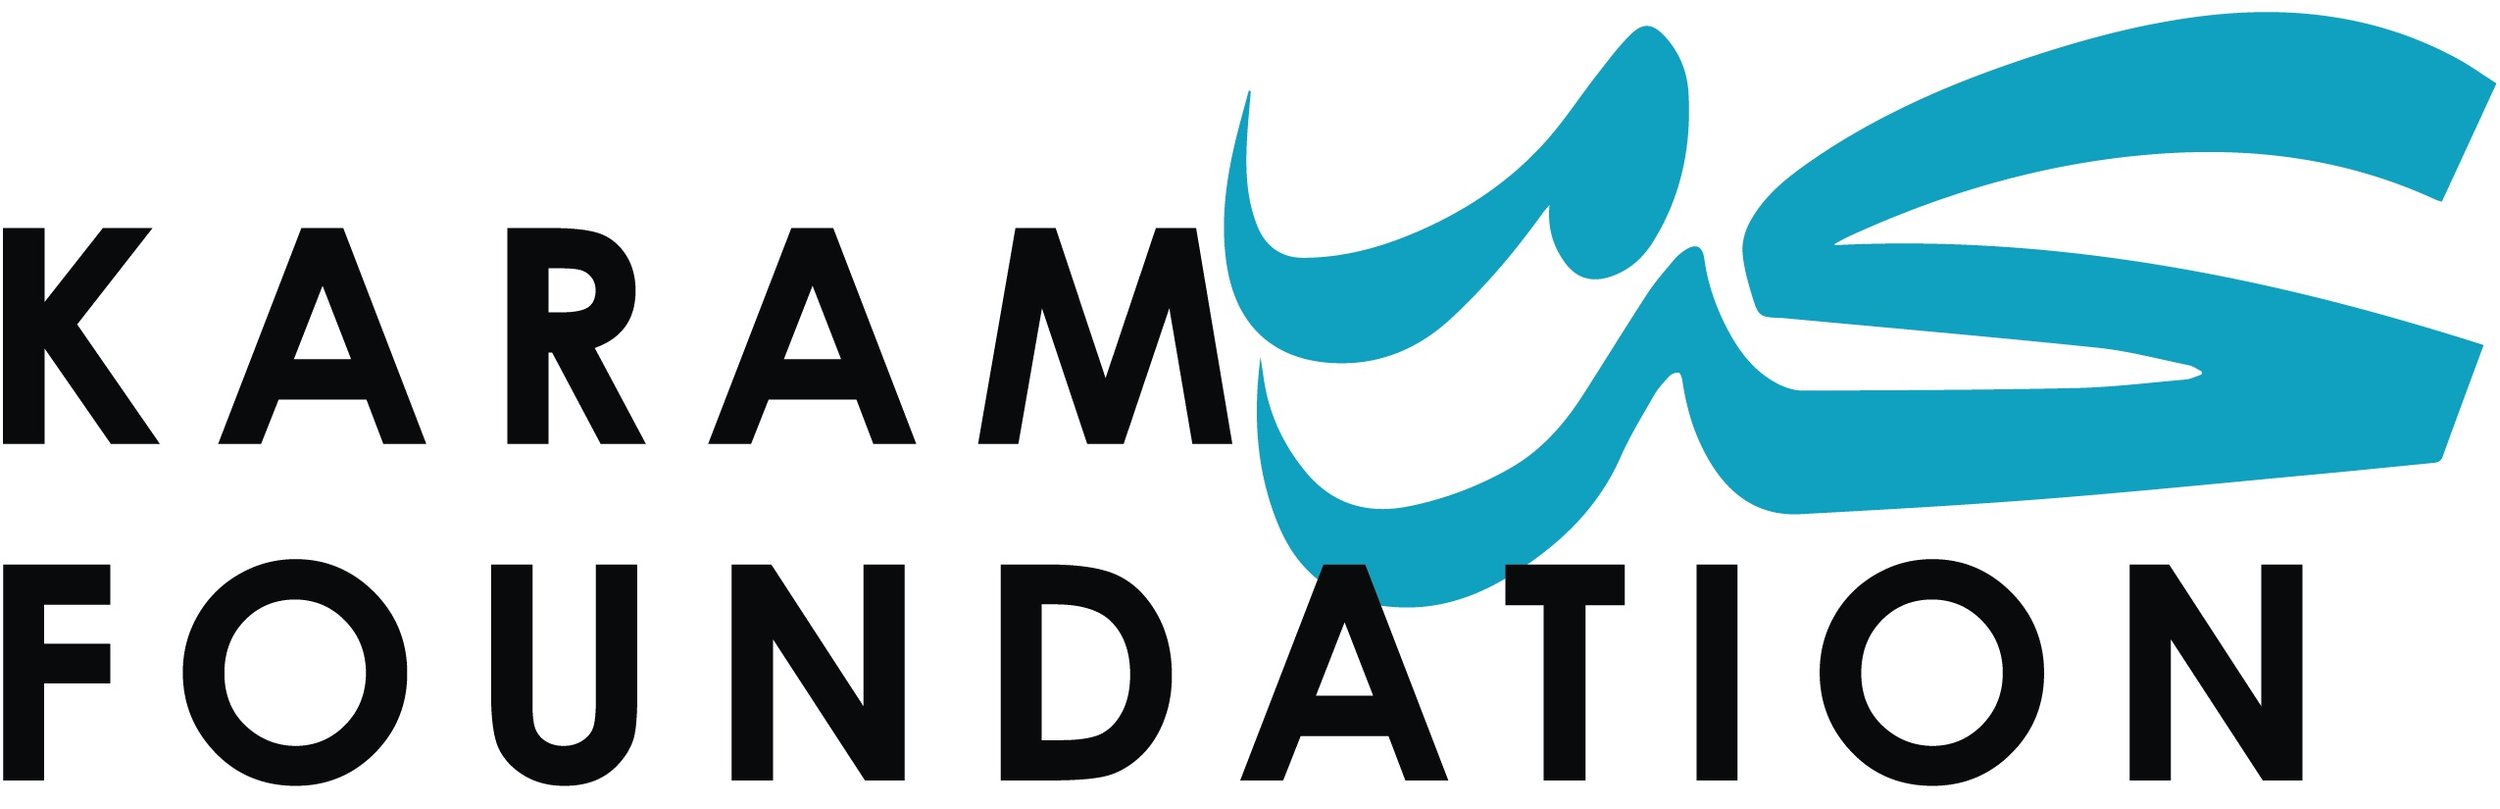 Karam Foundation.jpg